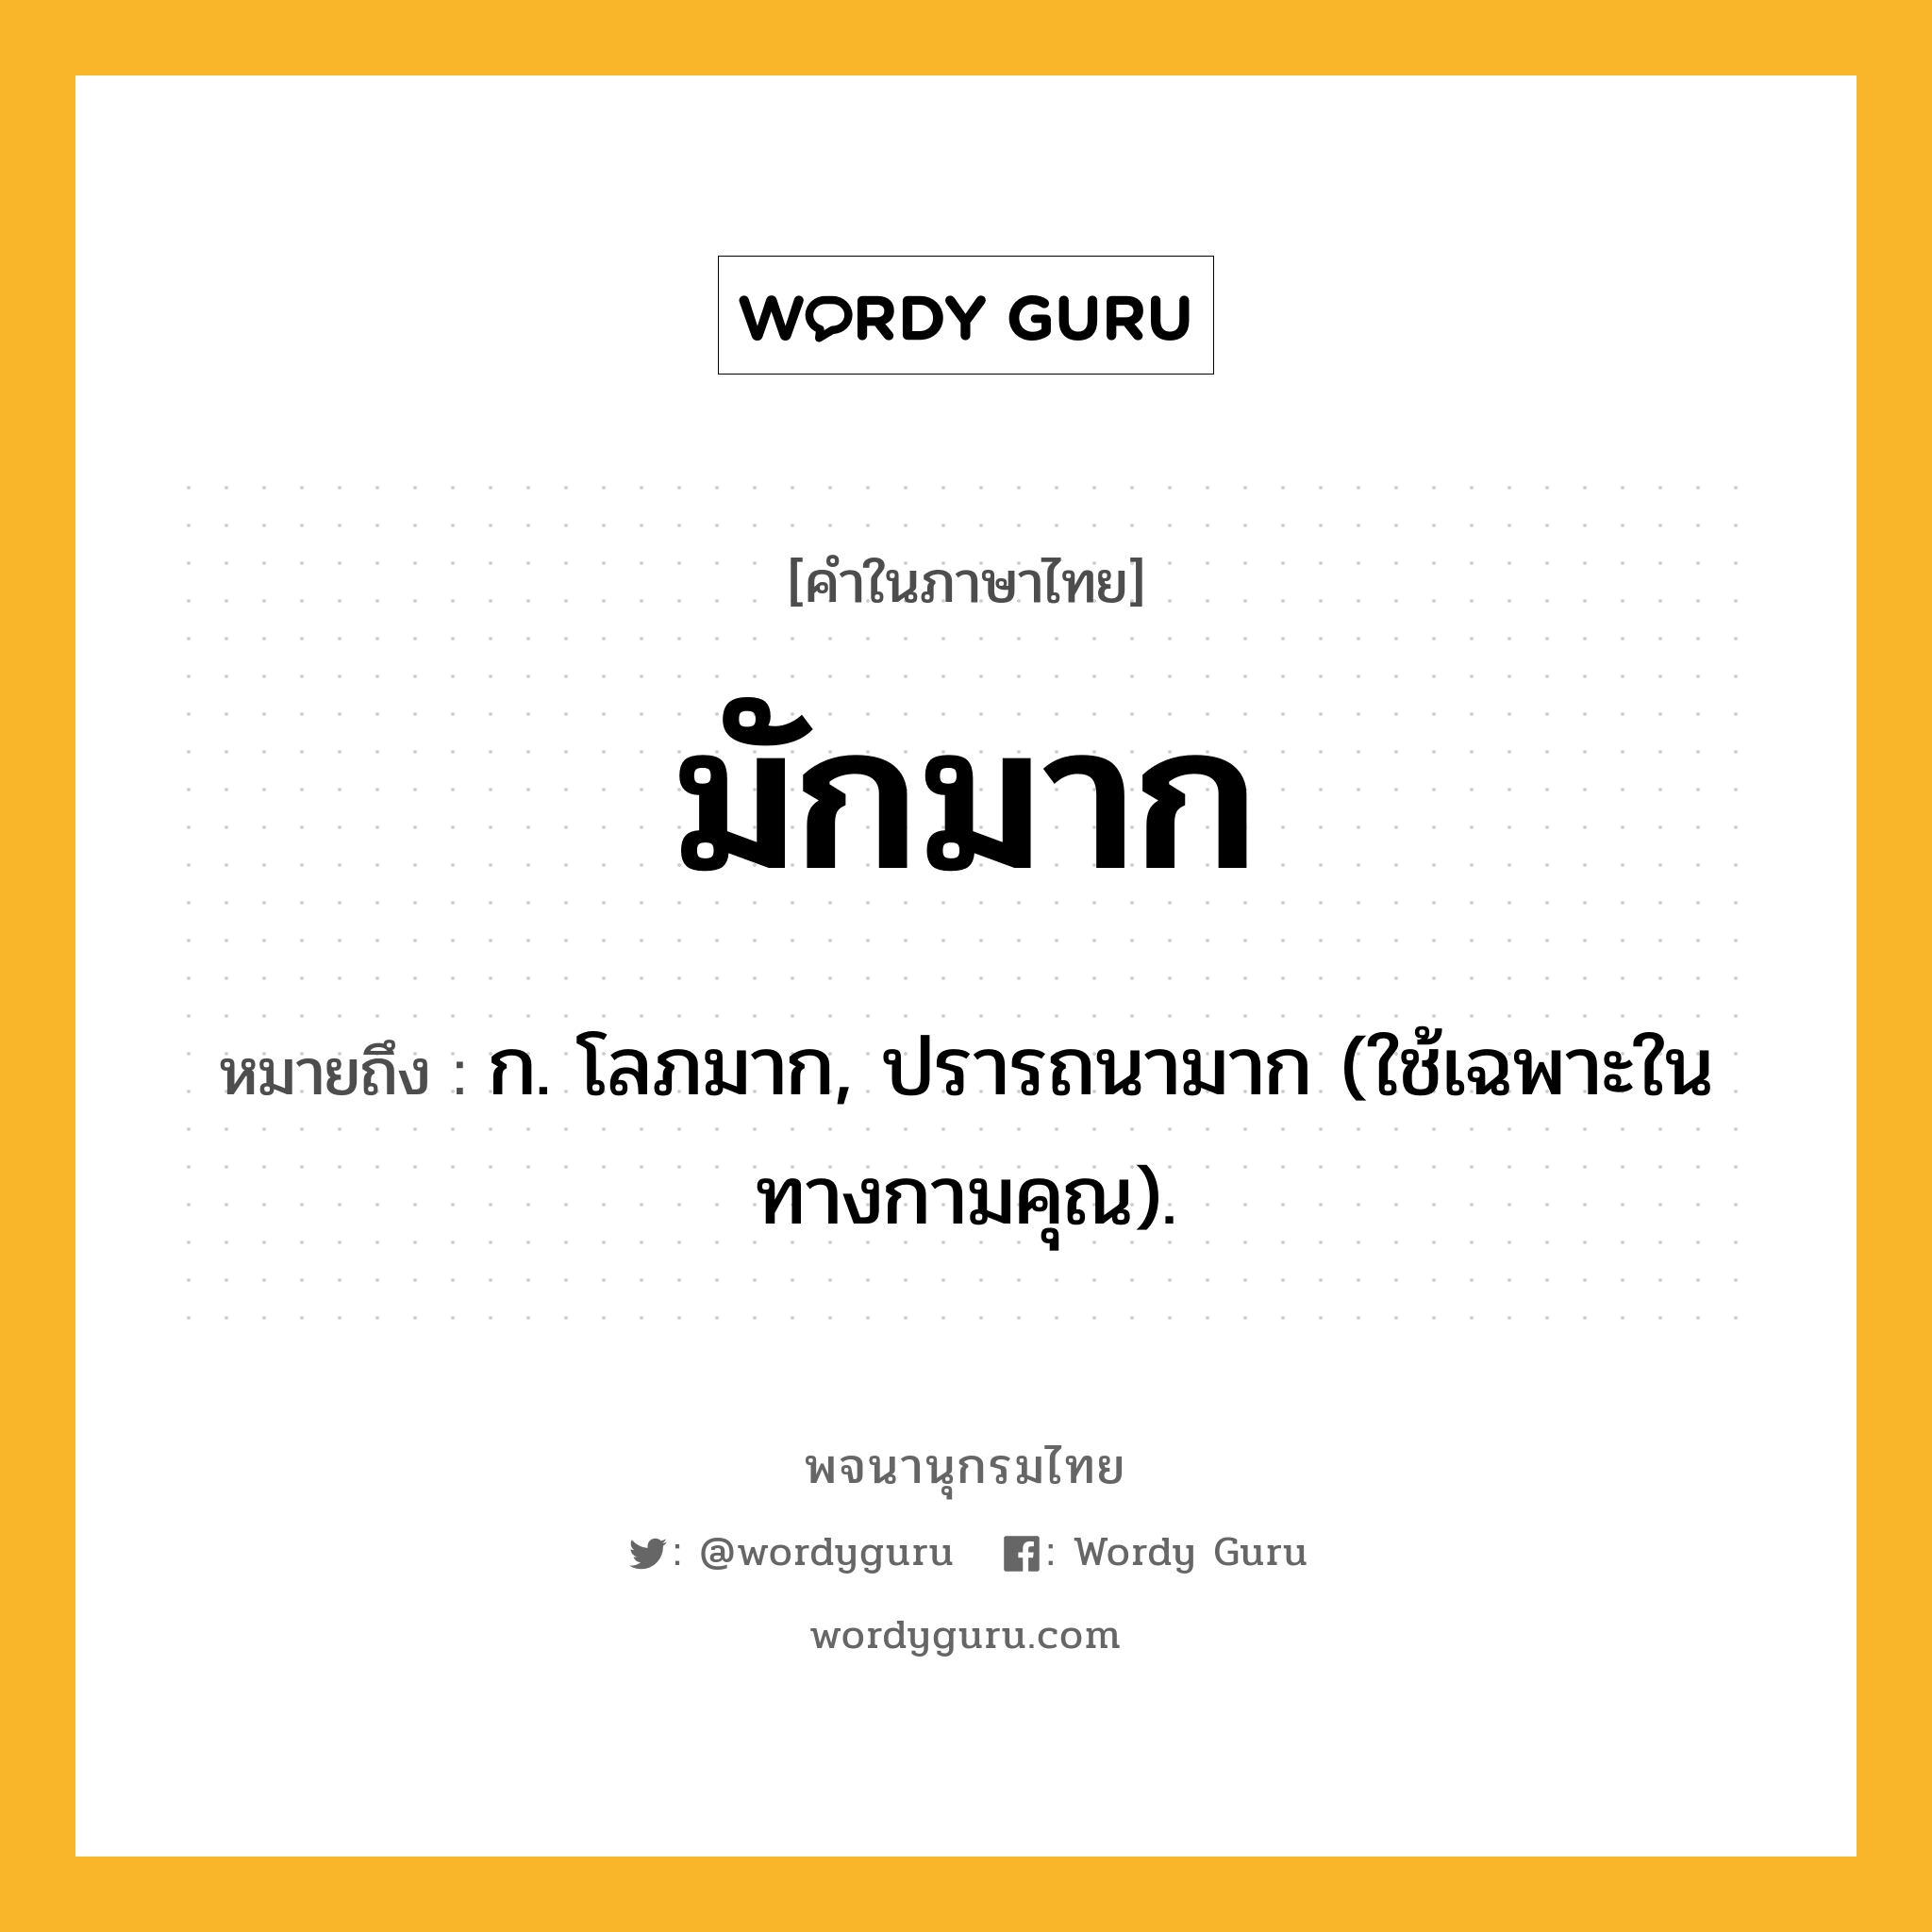 มักมาก หมายถึงอะไร?, คำในภาษาไทย มักมาก หมายถึง ก. โลภมาก, ปรารถนามาก (ใช้เฉพาะในทางกามคุณ).